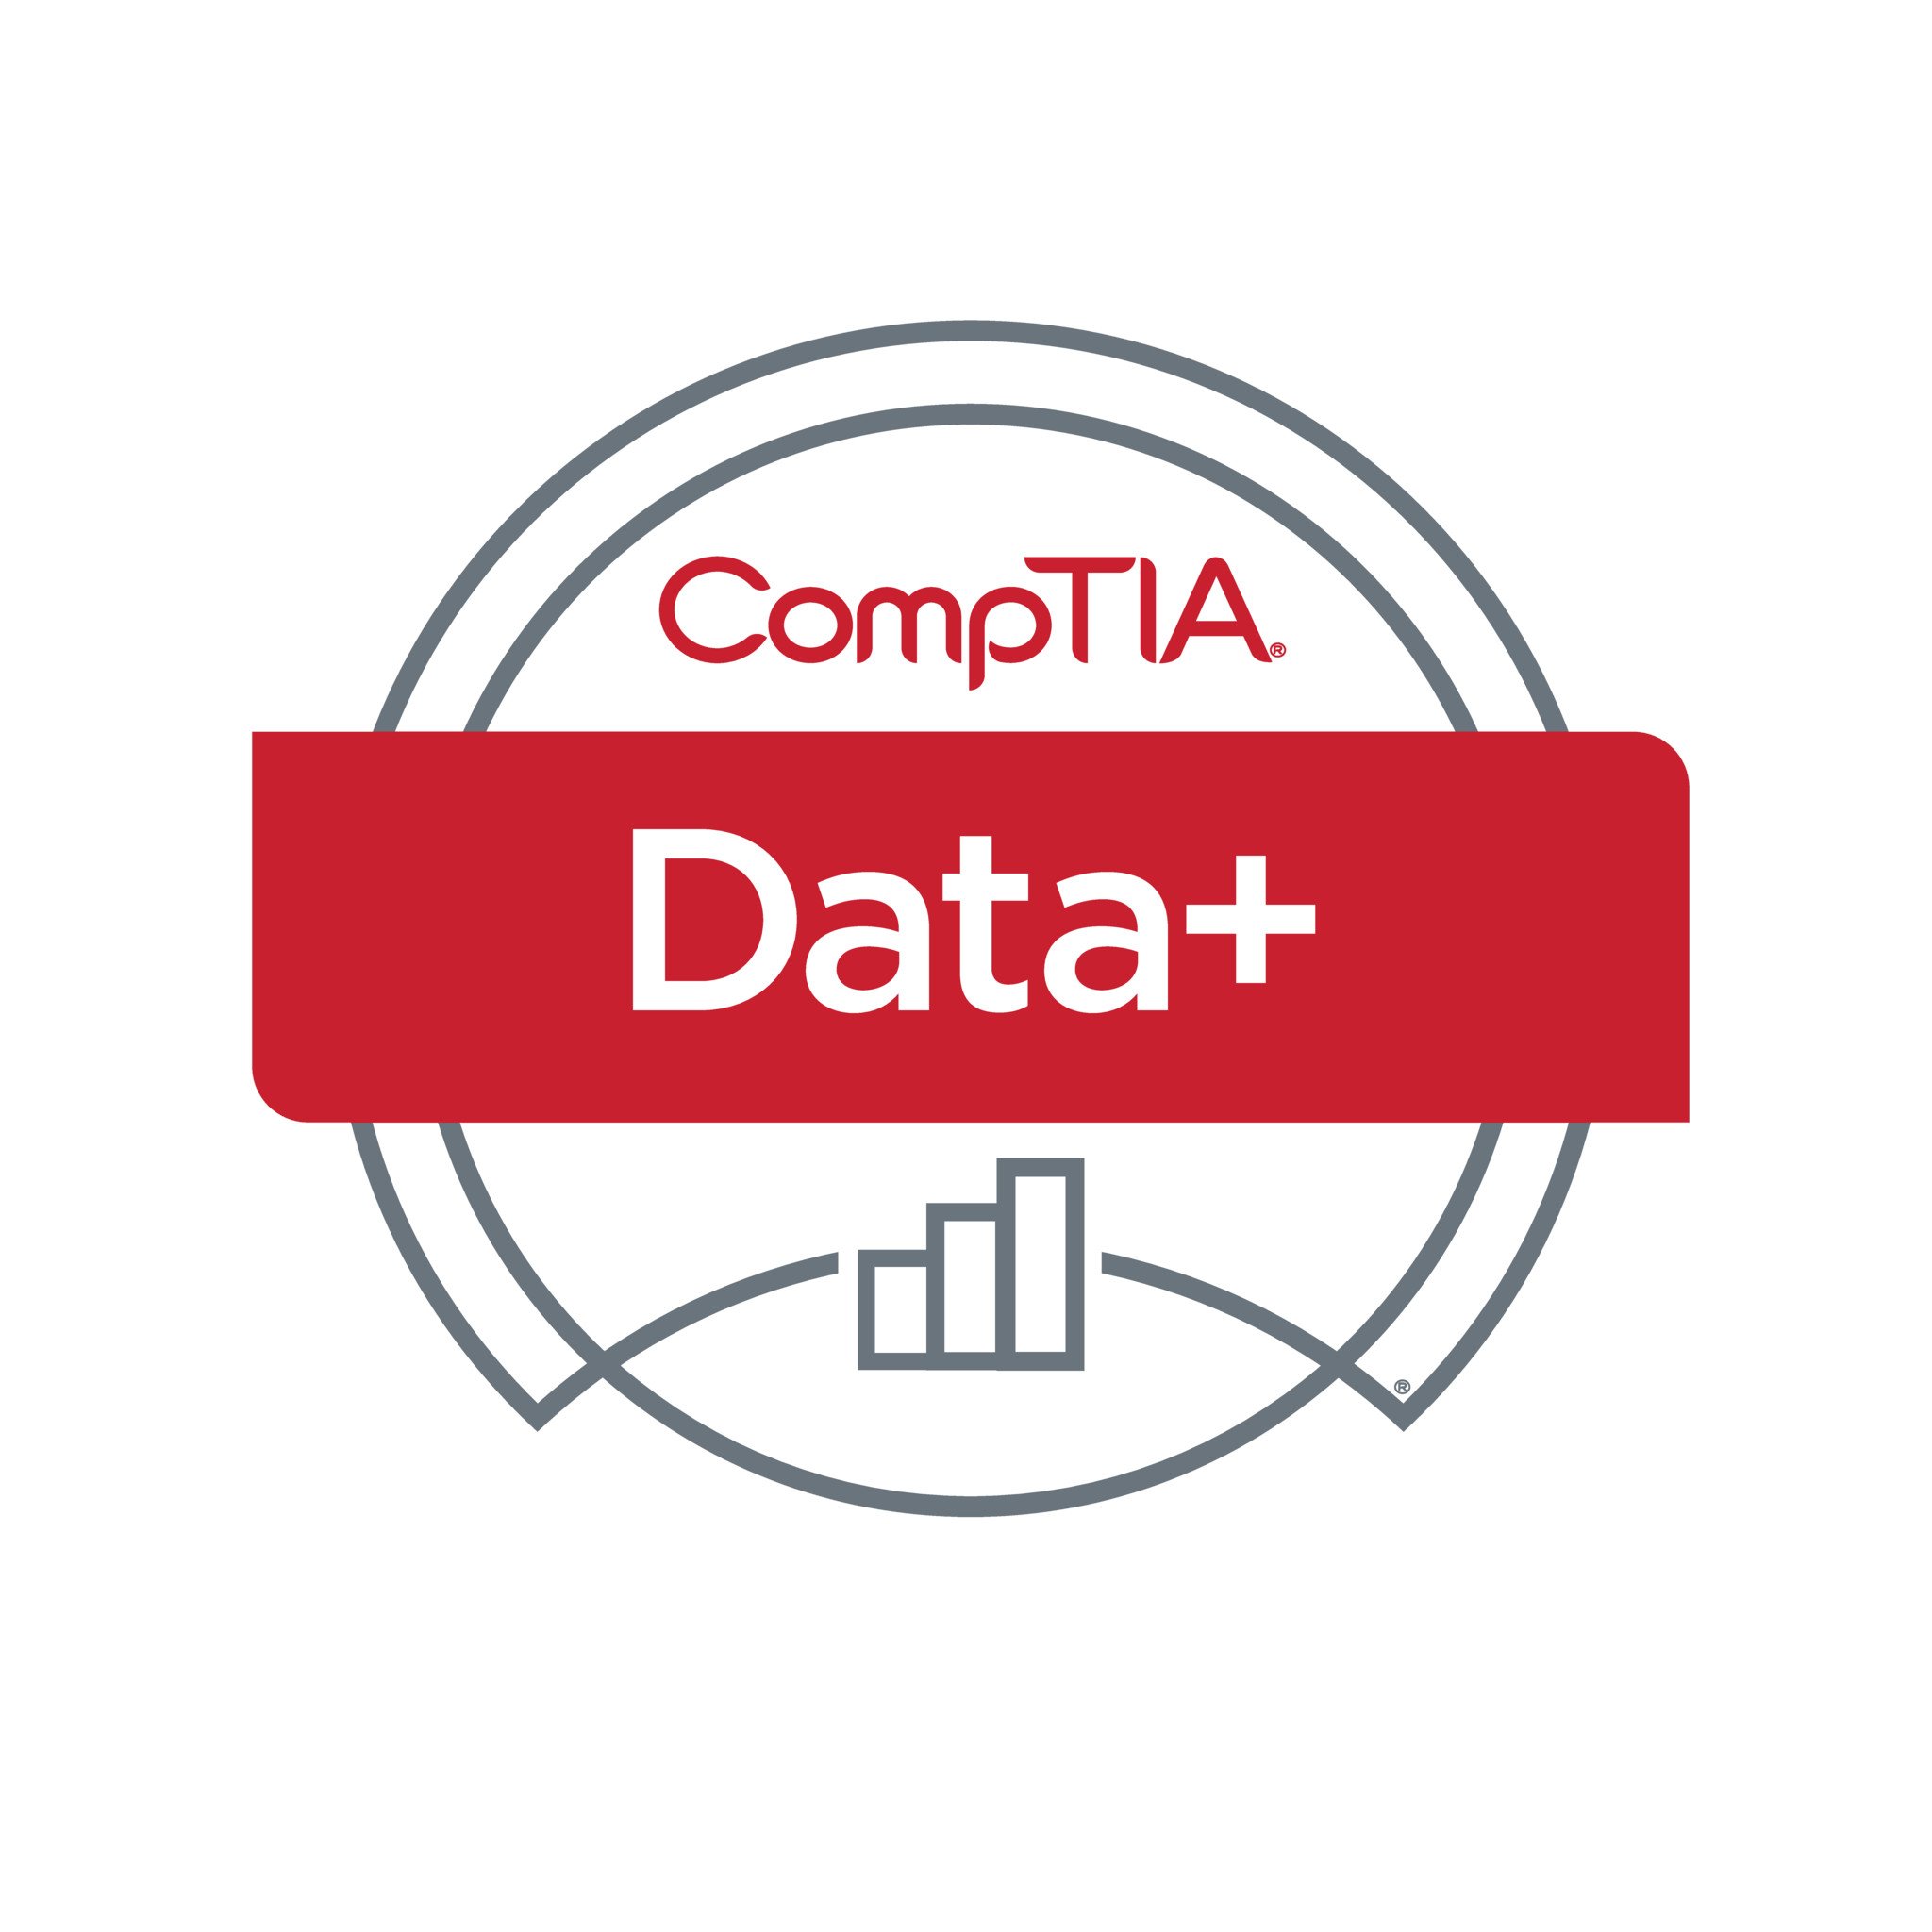 Cours de formation et certification CompTIA Data+